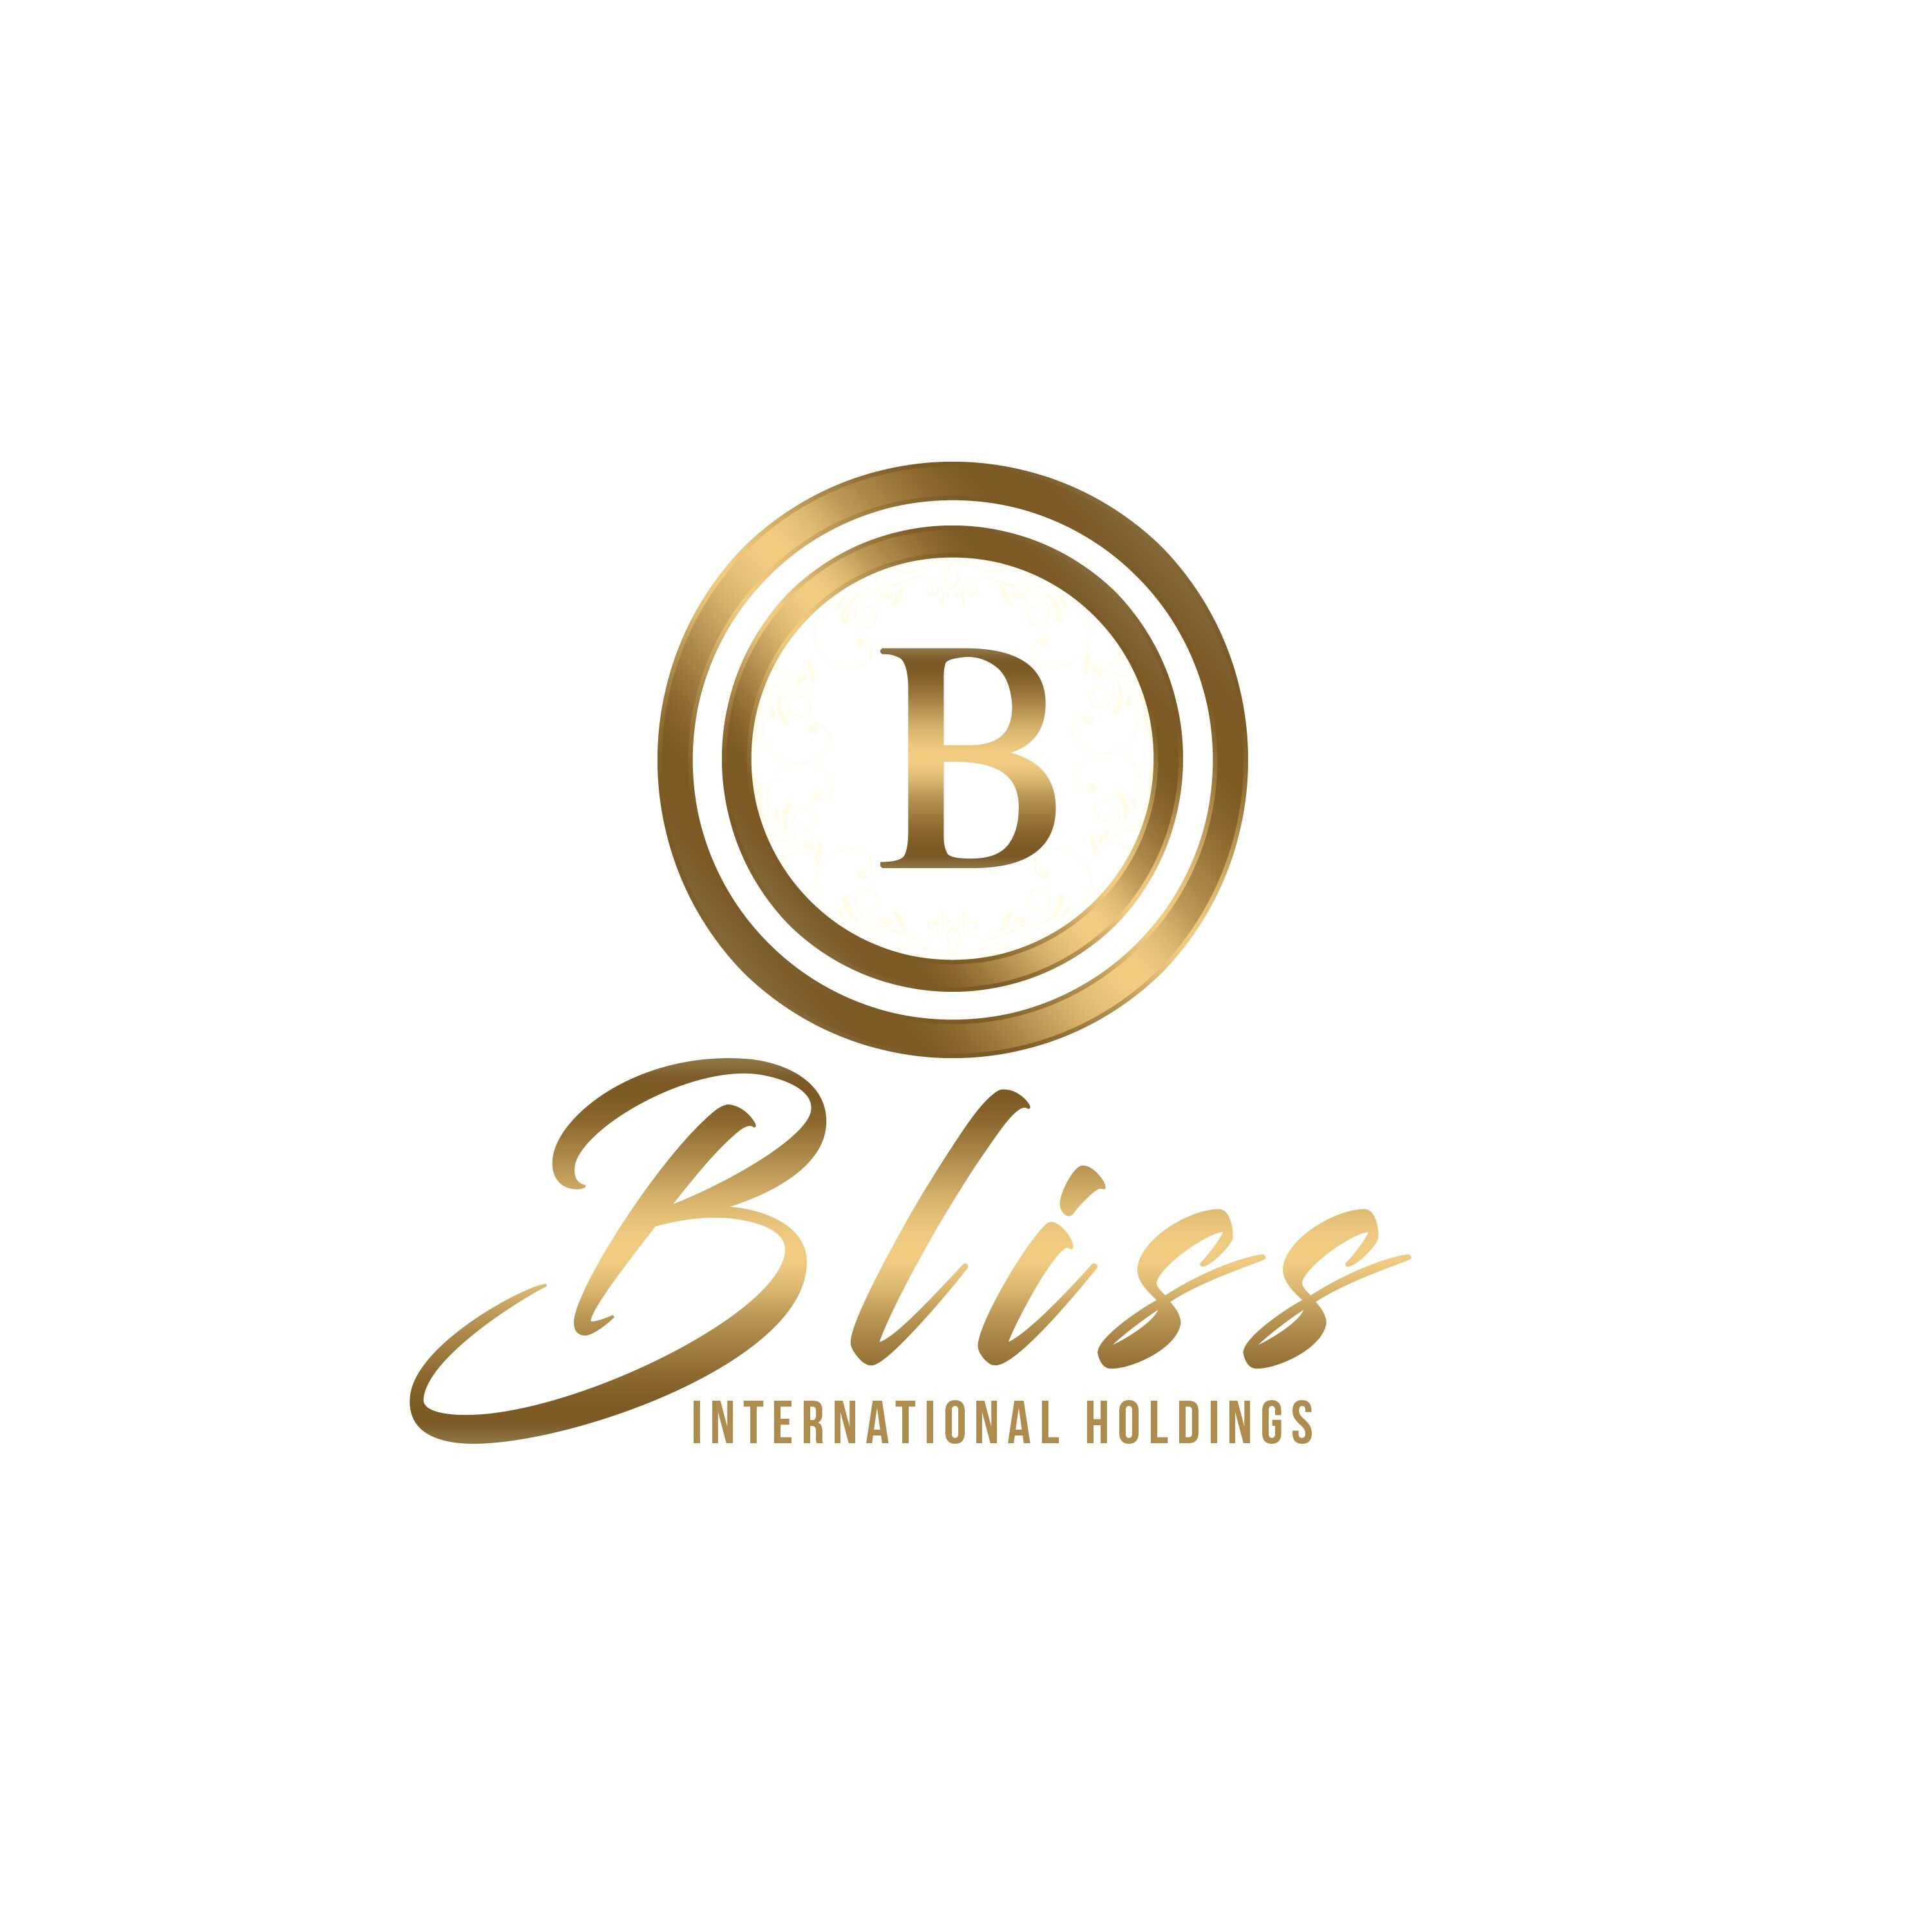 bliss-international-holdings © ©bliss-international-holdings bliss-international-holdings